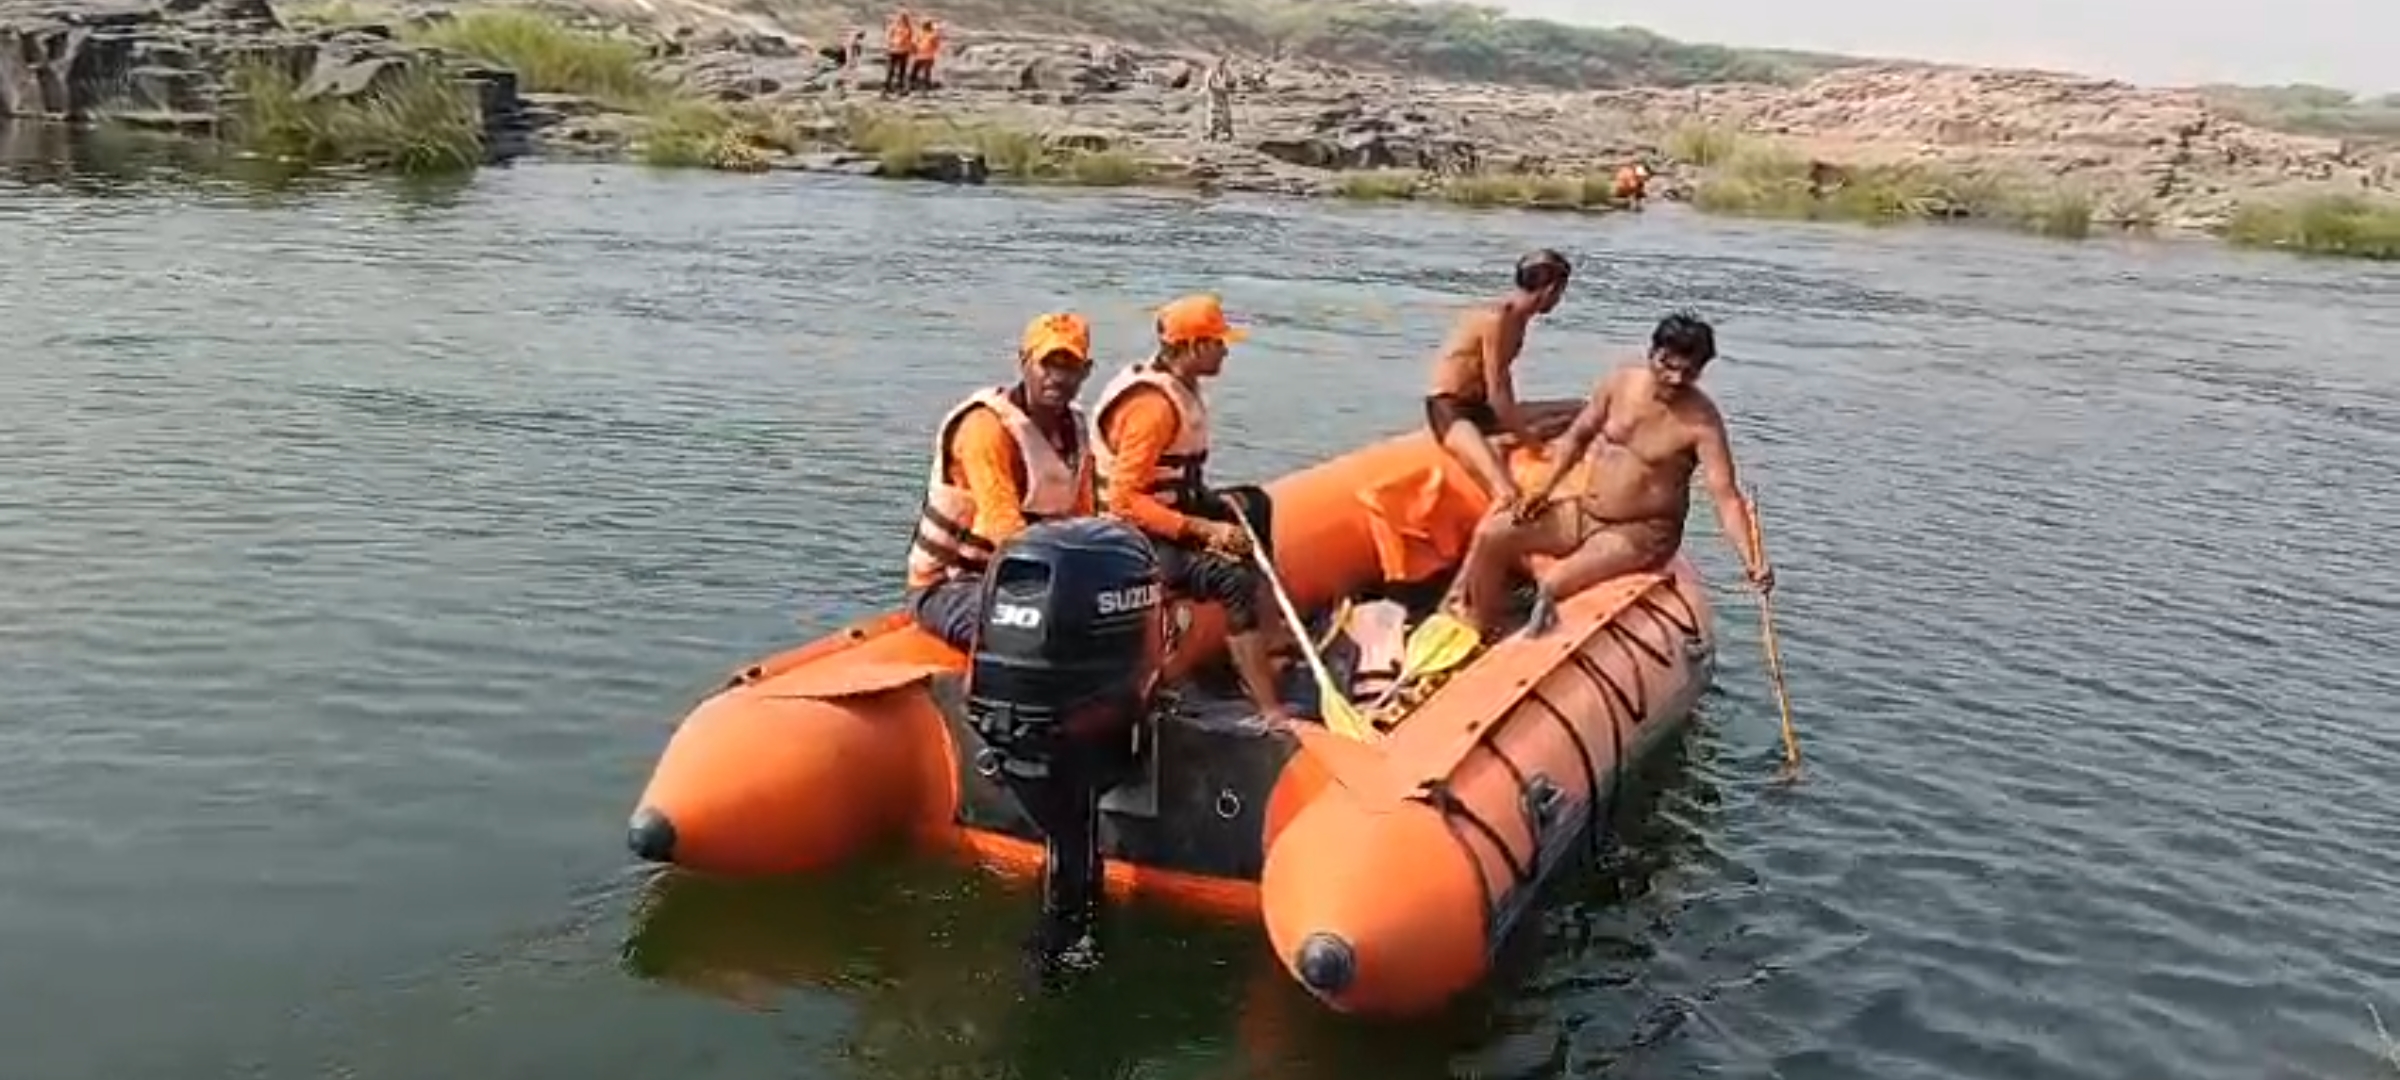 बेतवा नदी में शवों की तलाश करती एसडीआरएफ की टीम